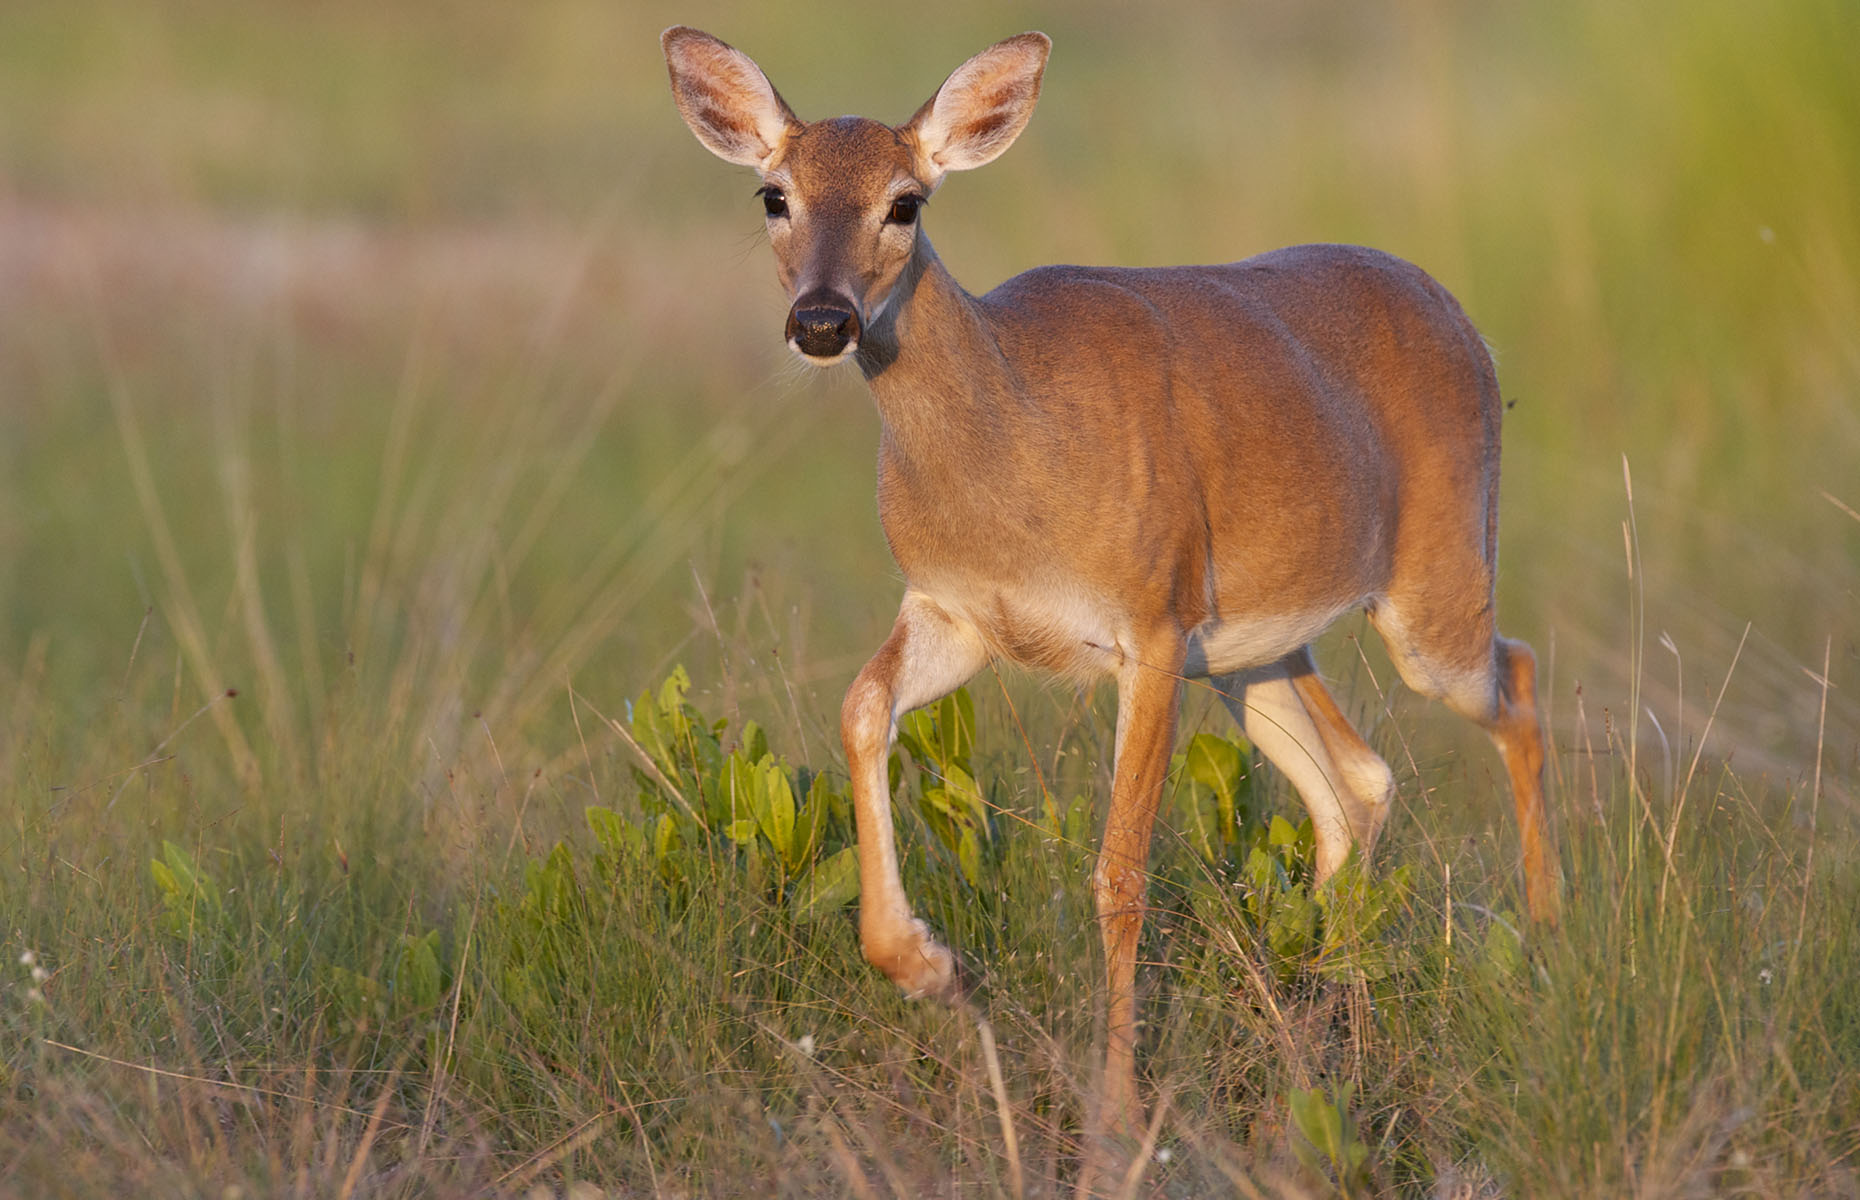 Key deer (Image: moosehenderson/Shutterstock)